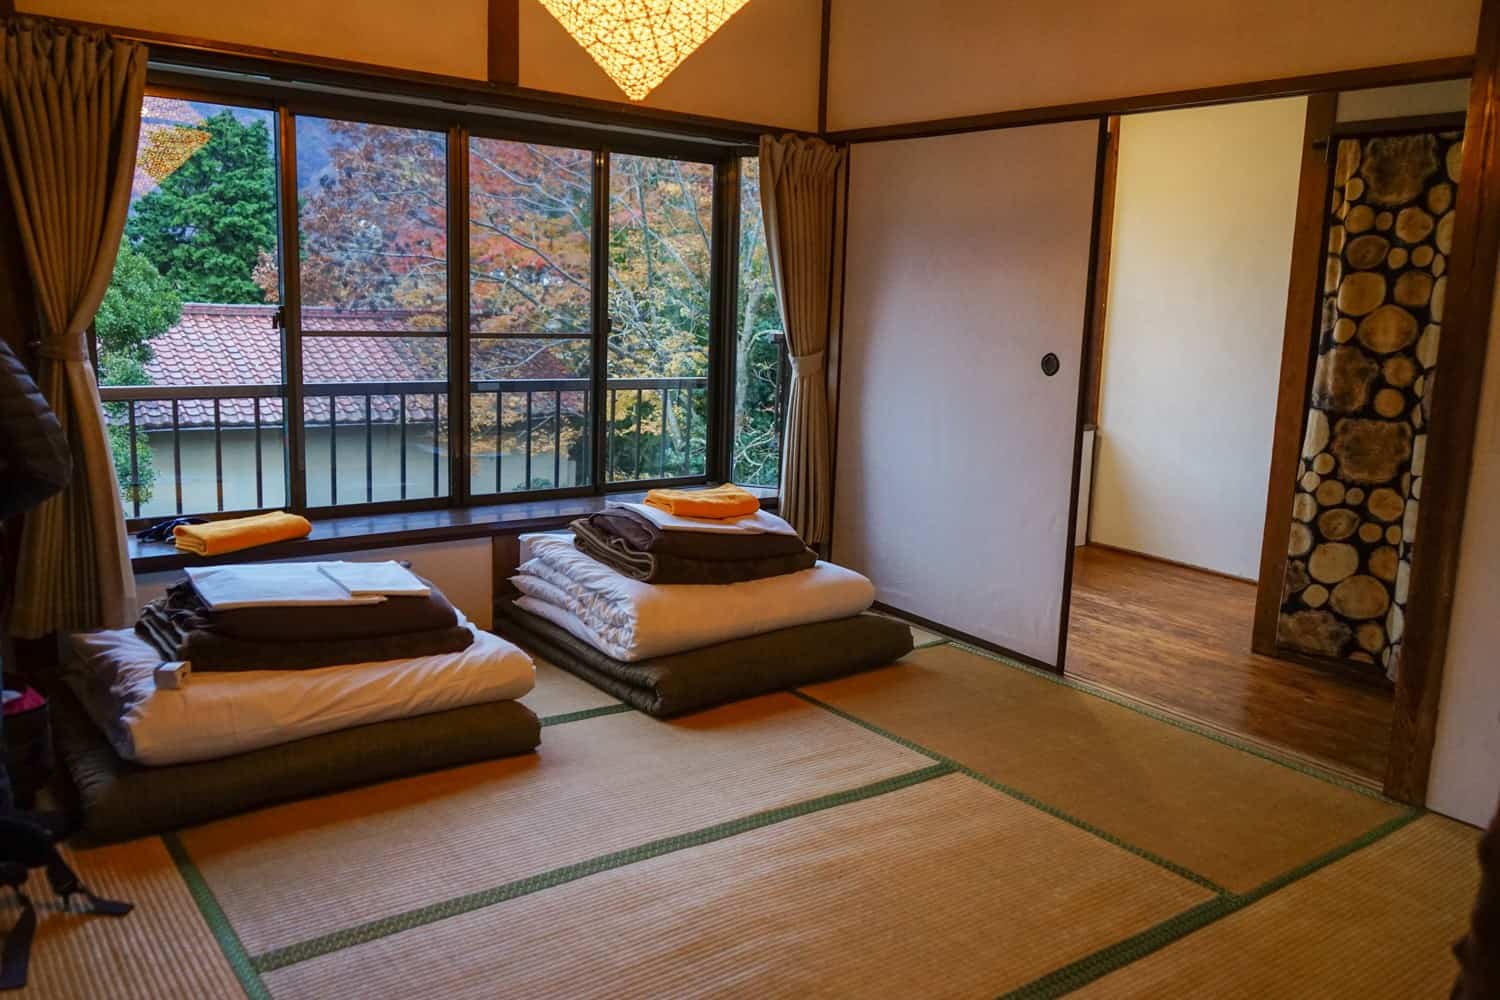 Tatami mat room in Hakone Japan